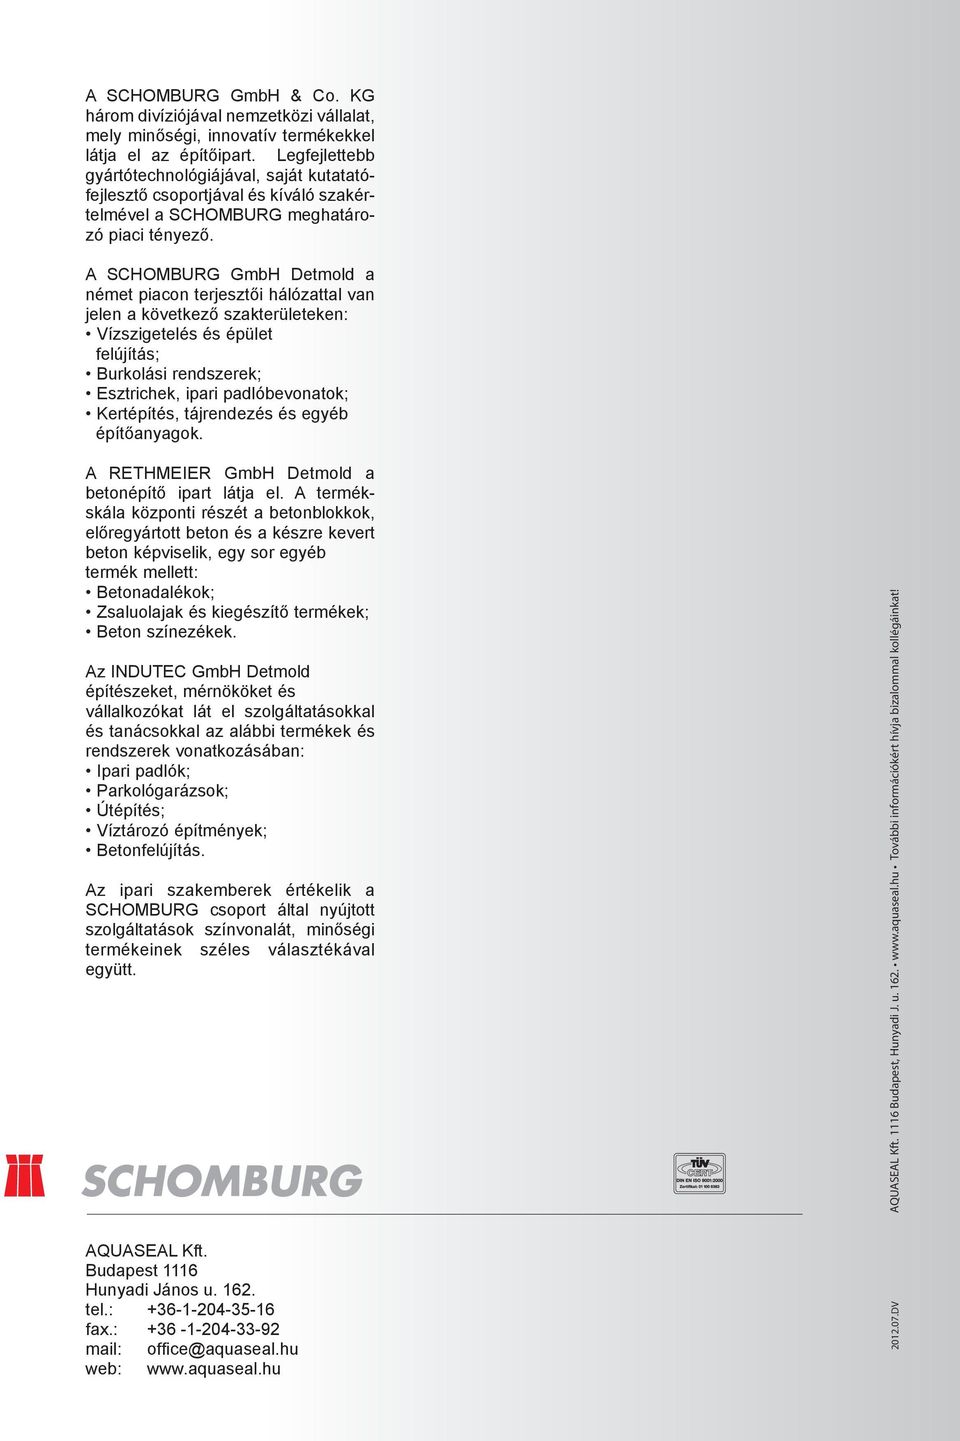 A SCHOMBURG GmbH Detmold a német piacon terjesztői hálózattal van jelen a következő szakterületeken: Vízszigetelés és épület felújítás; Burkolási rendszerek; Esztrichek, ipari padlóbevonatok;